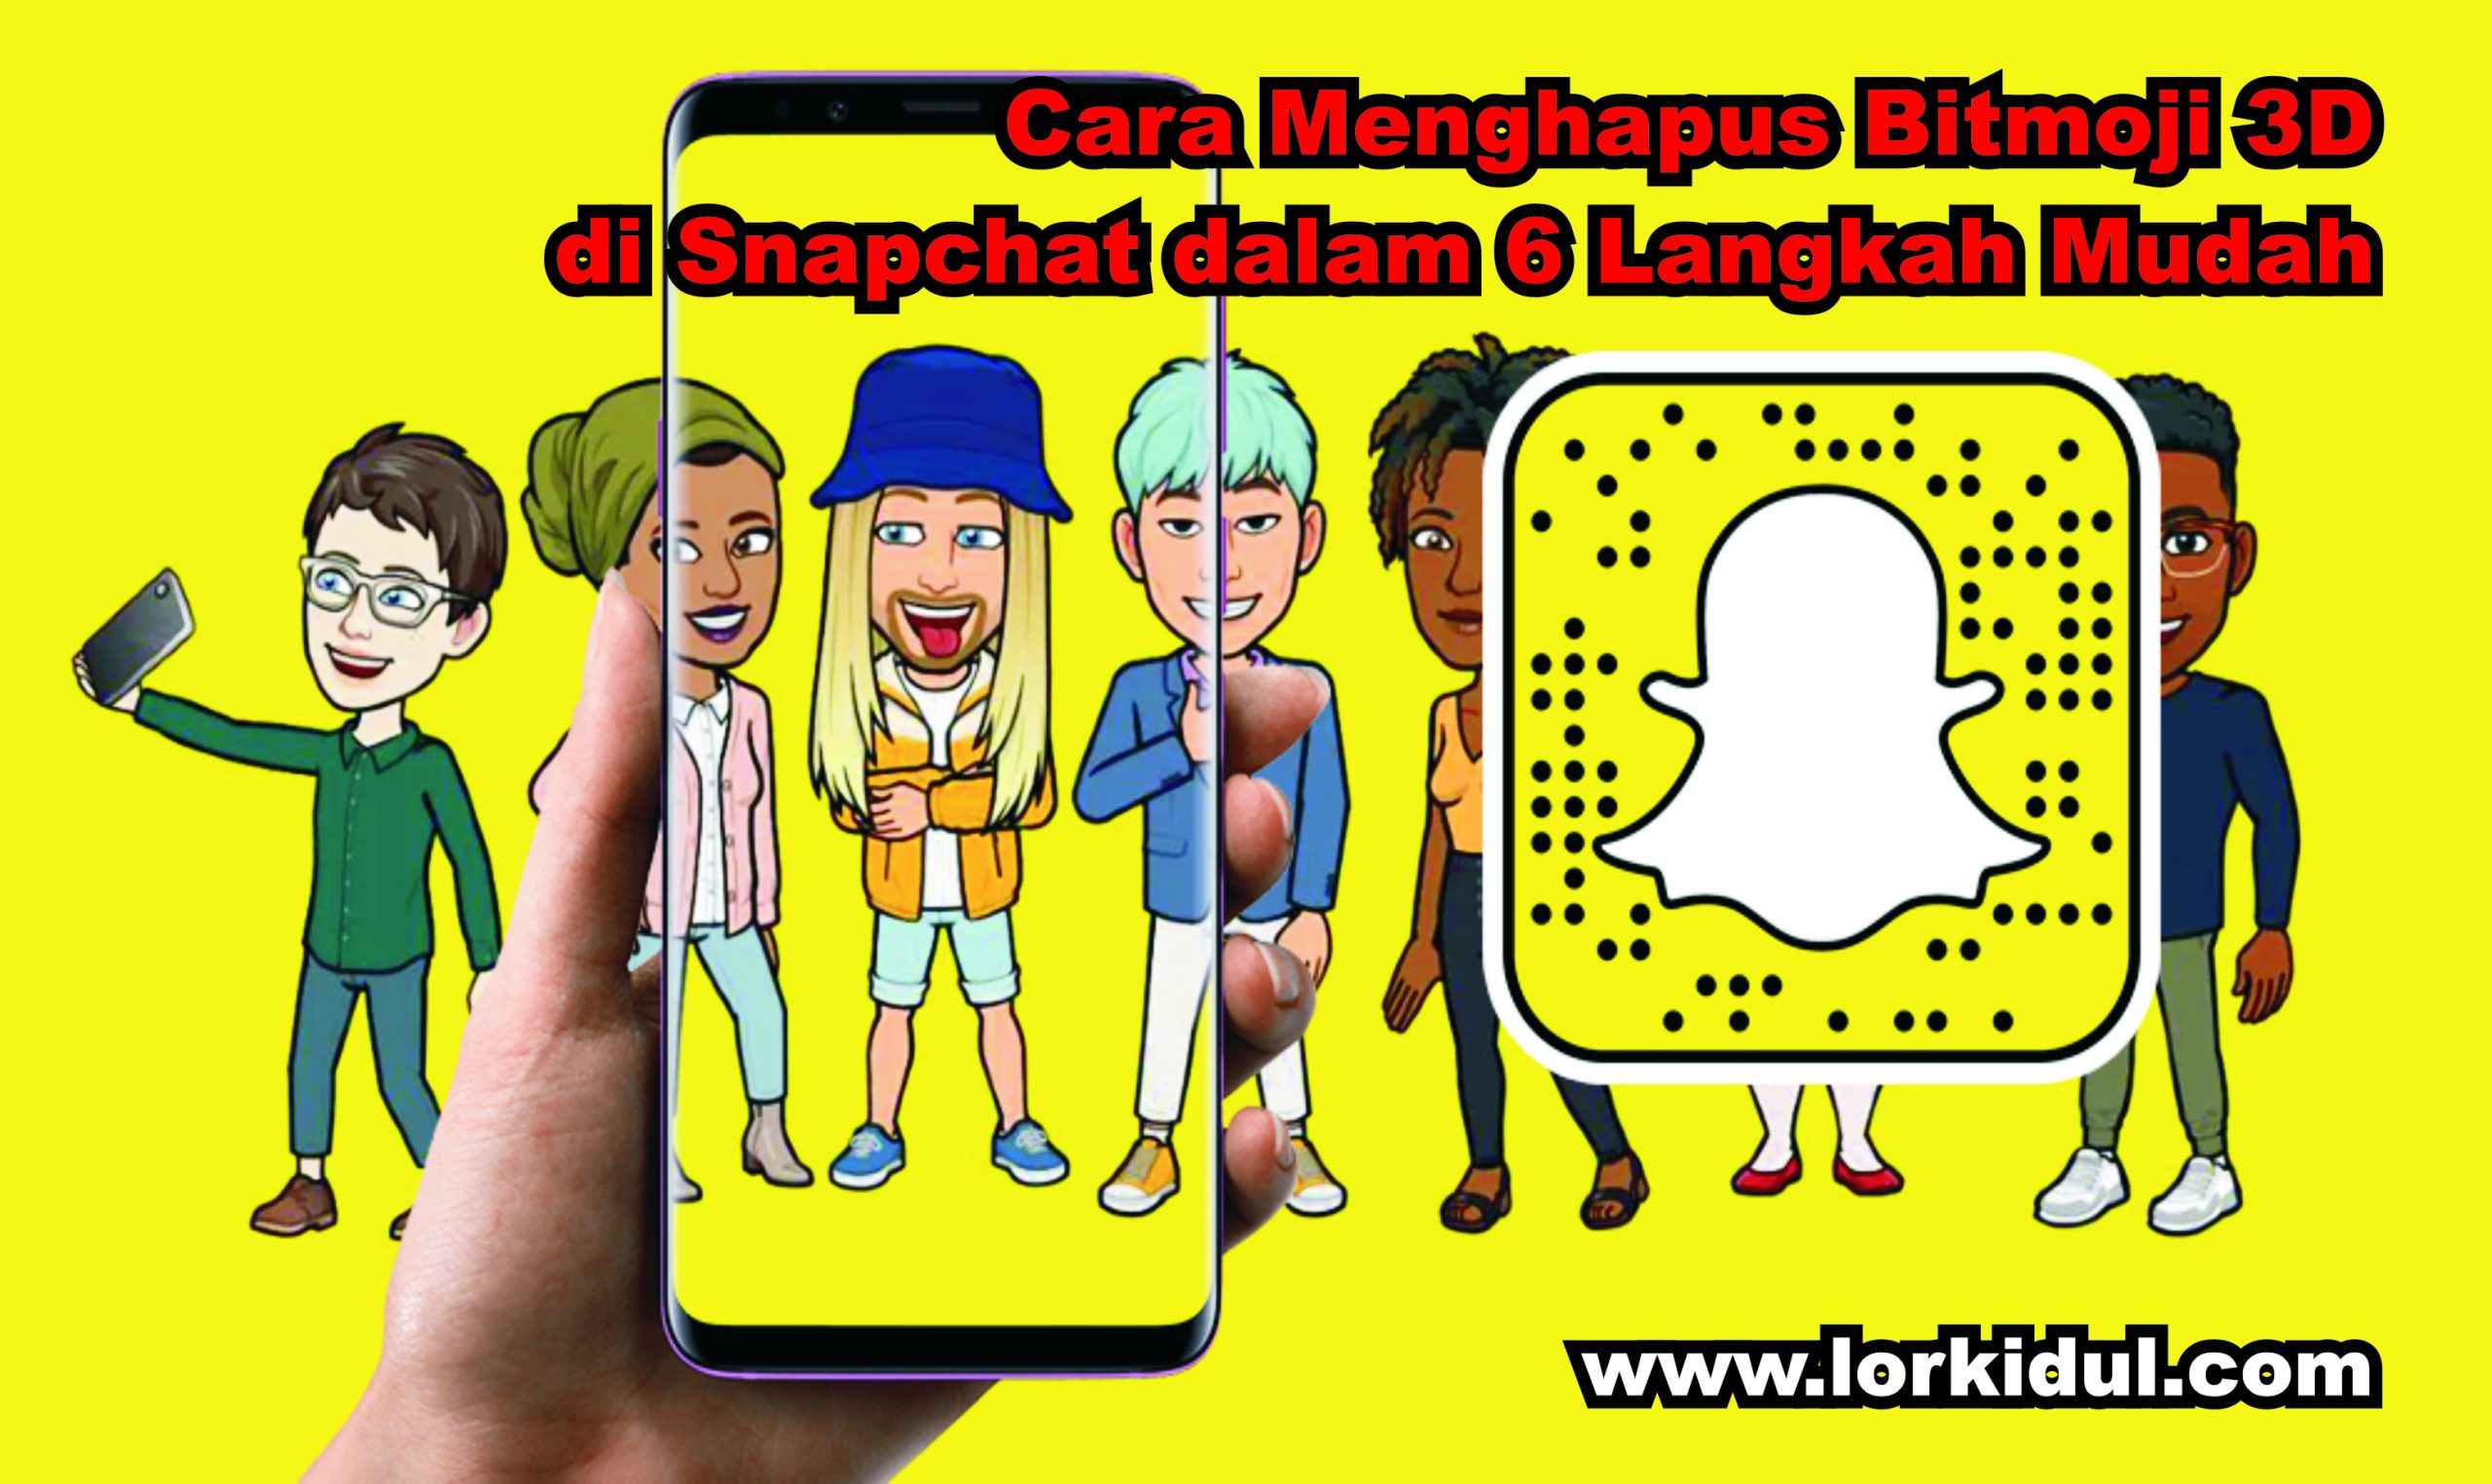 Cara Menghapus Bitmoji 3D di Snapchat